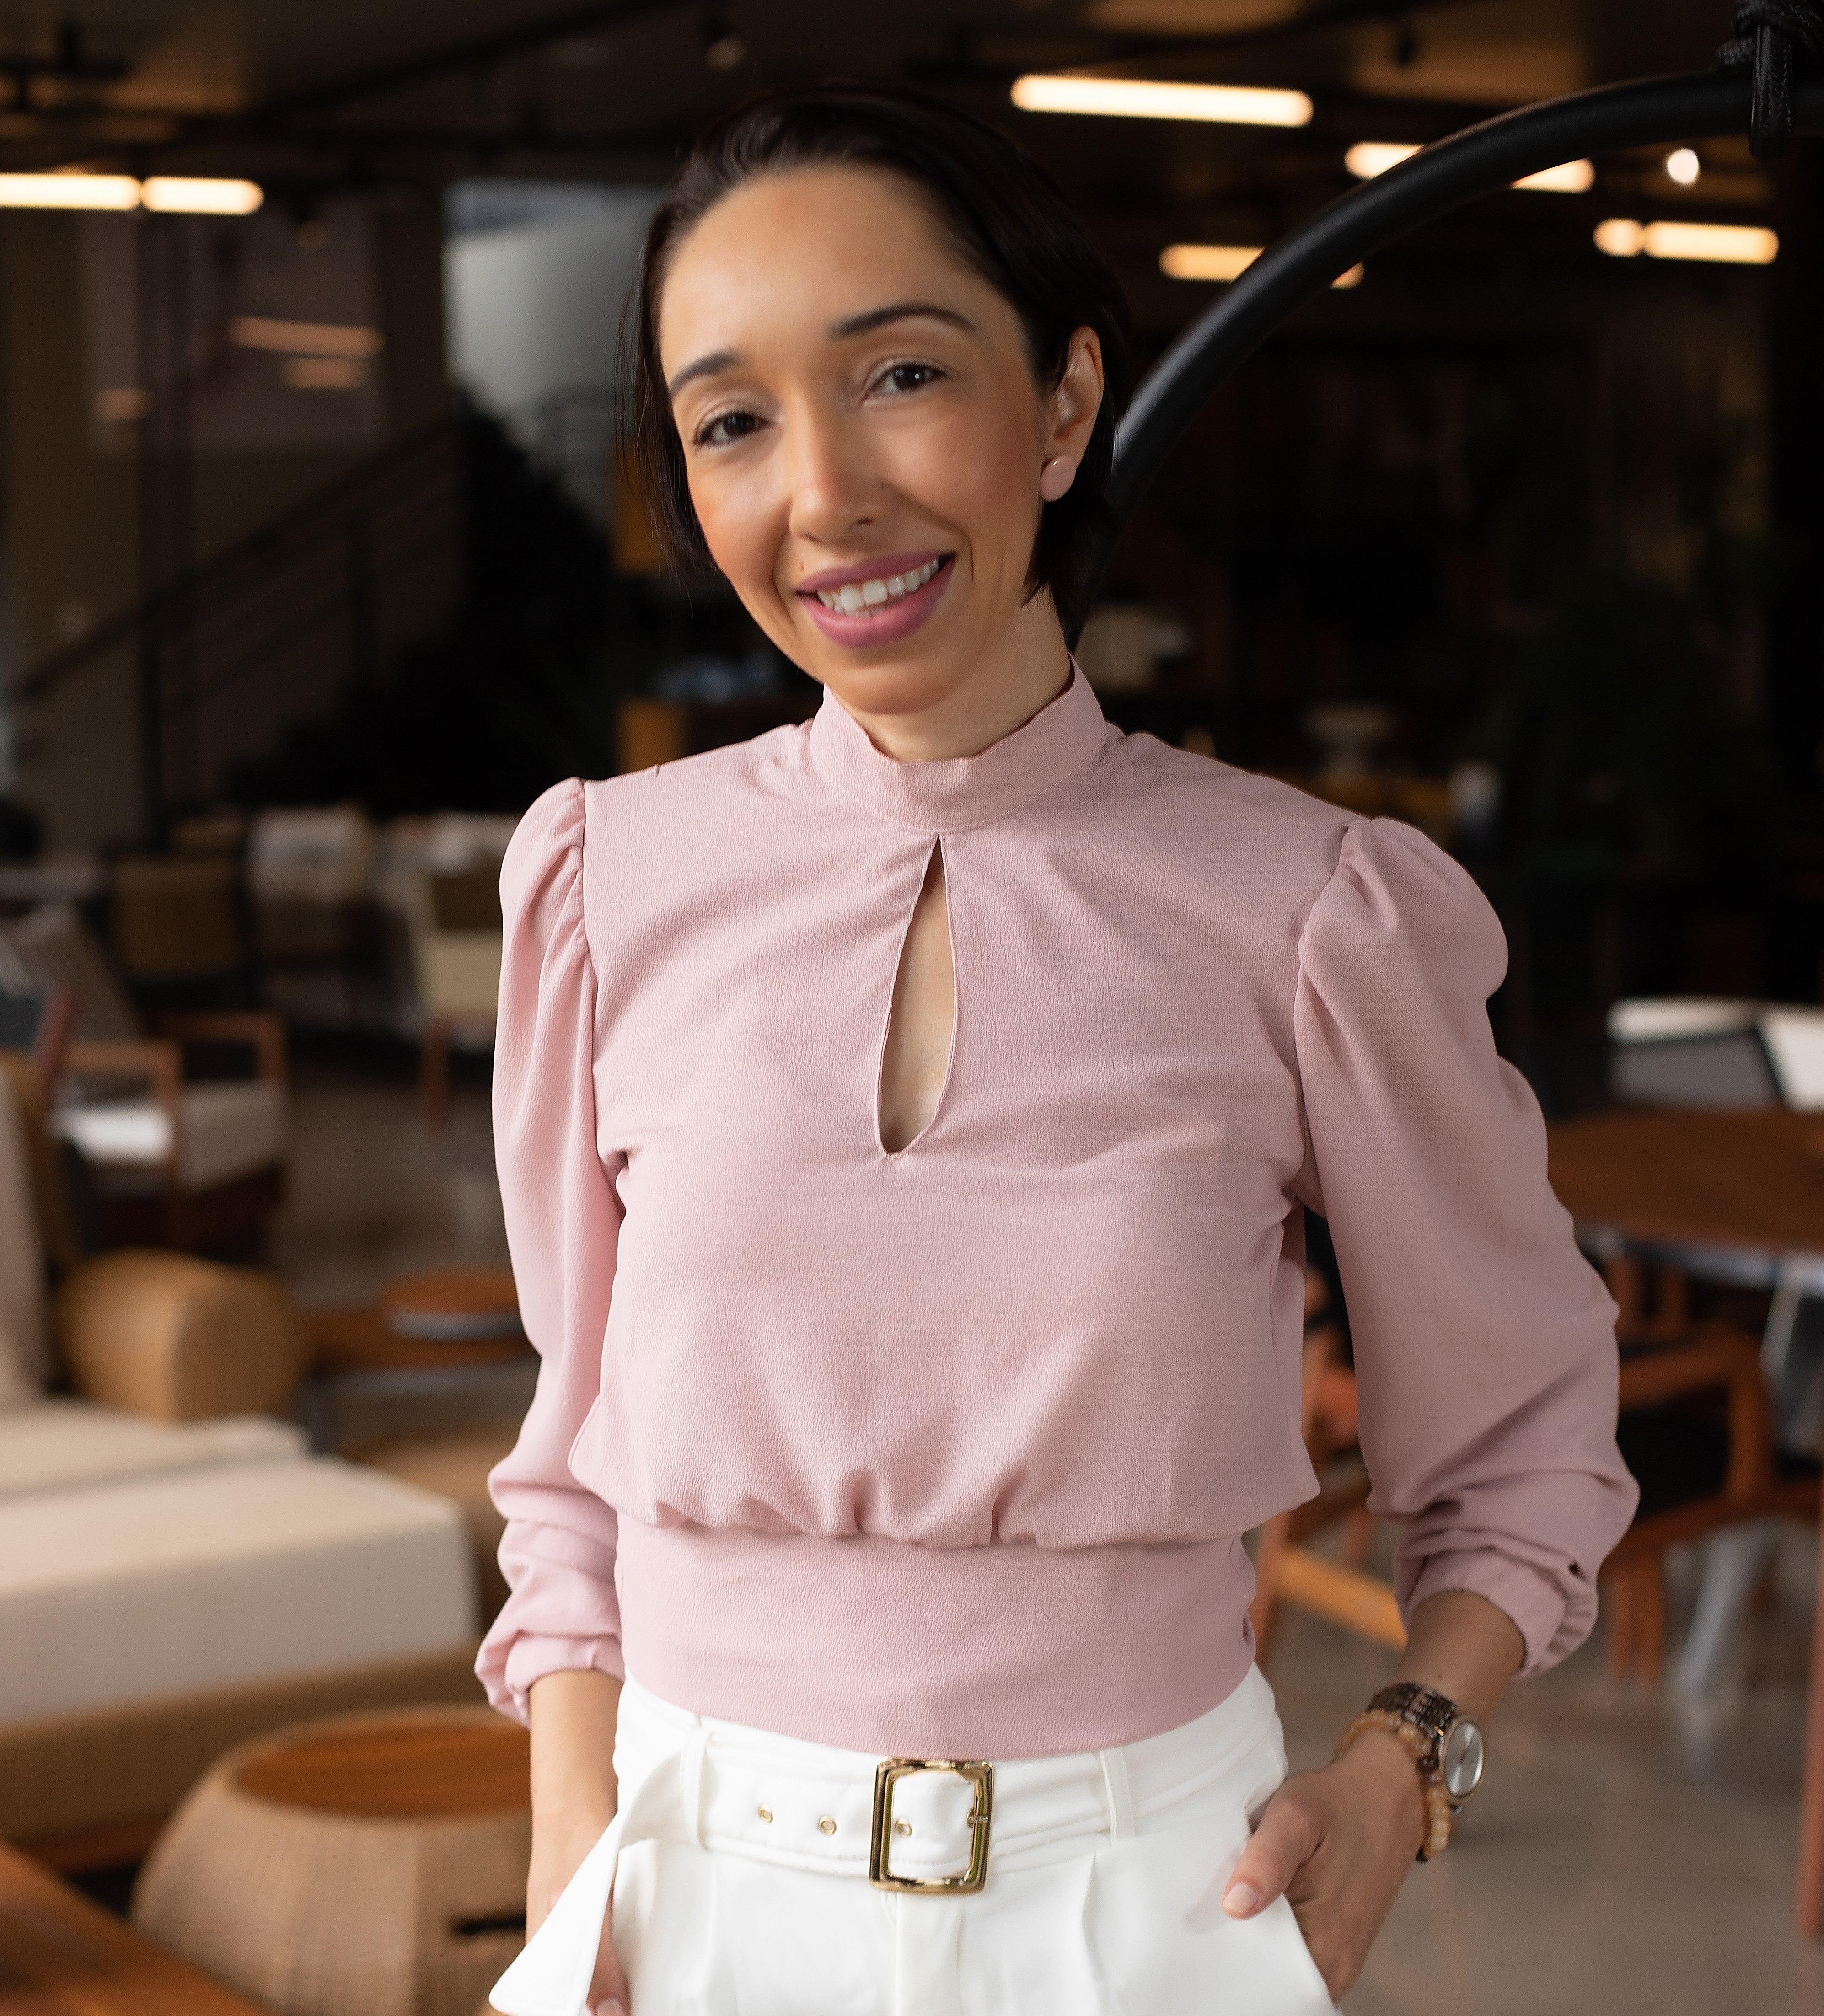 A carismática Lorenna Melo Silva está no Especial Mulheres Empreendedoras, compartilhando sua trajetória profissional e o sucesso do inovador método da Face2Face – aulas de inglês